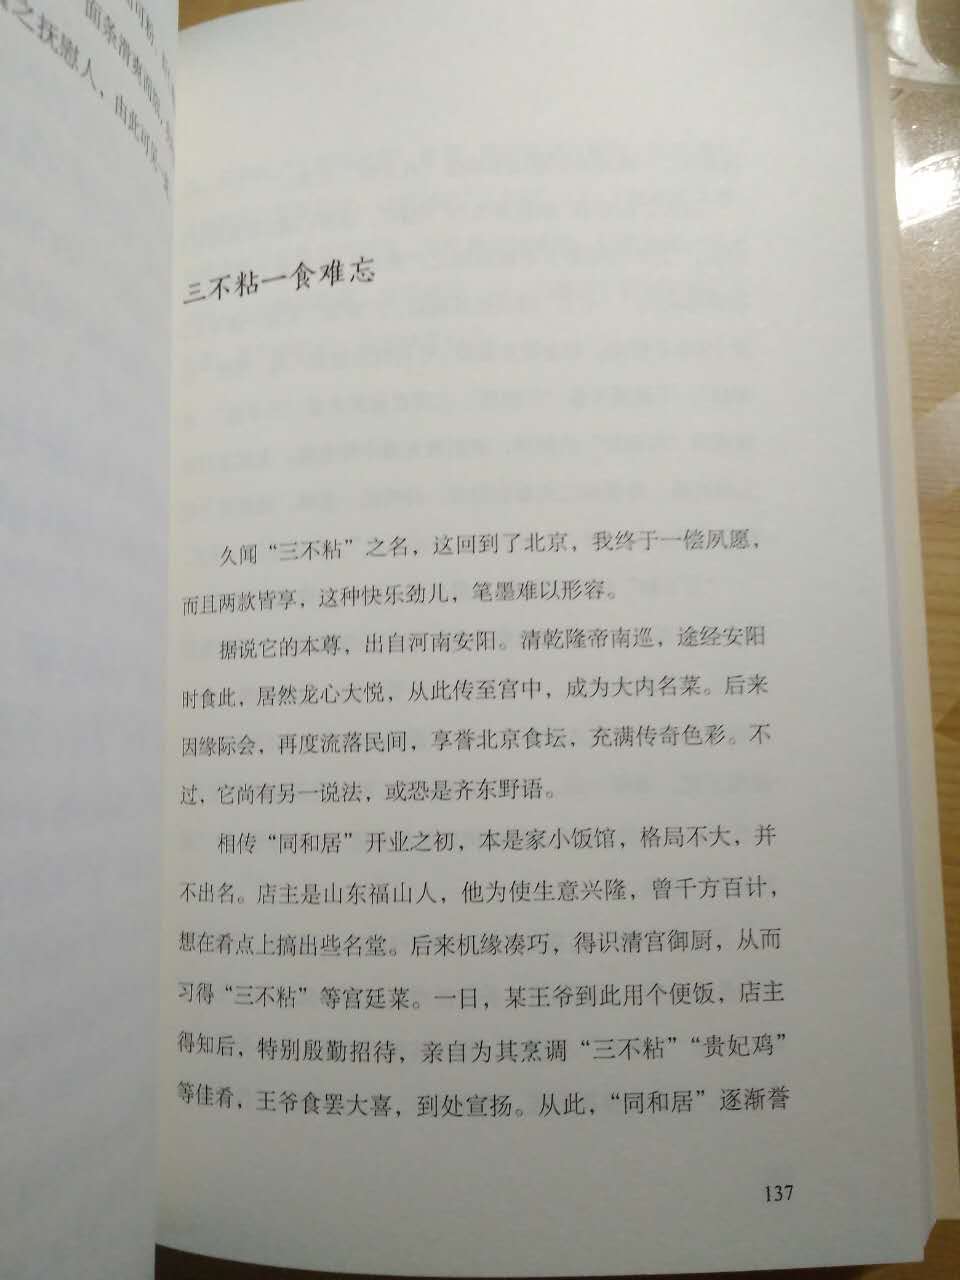 朱振藩的美食书有台湾的特色